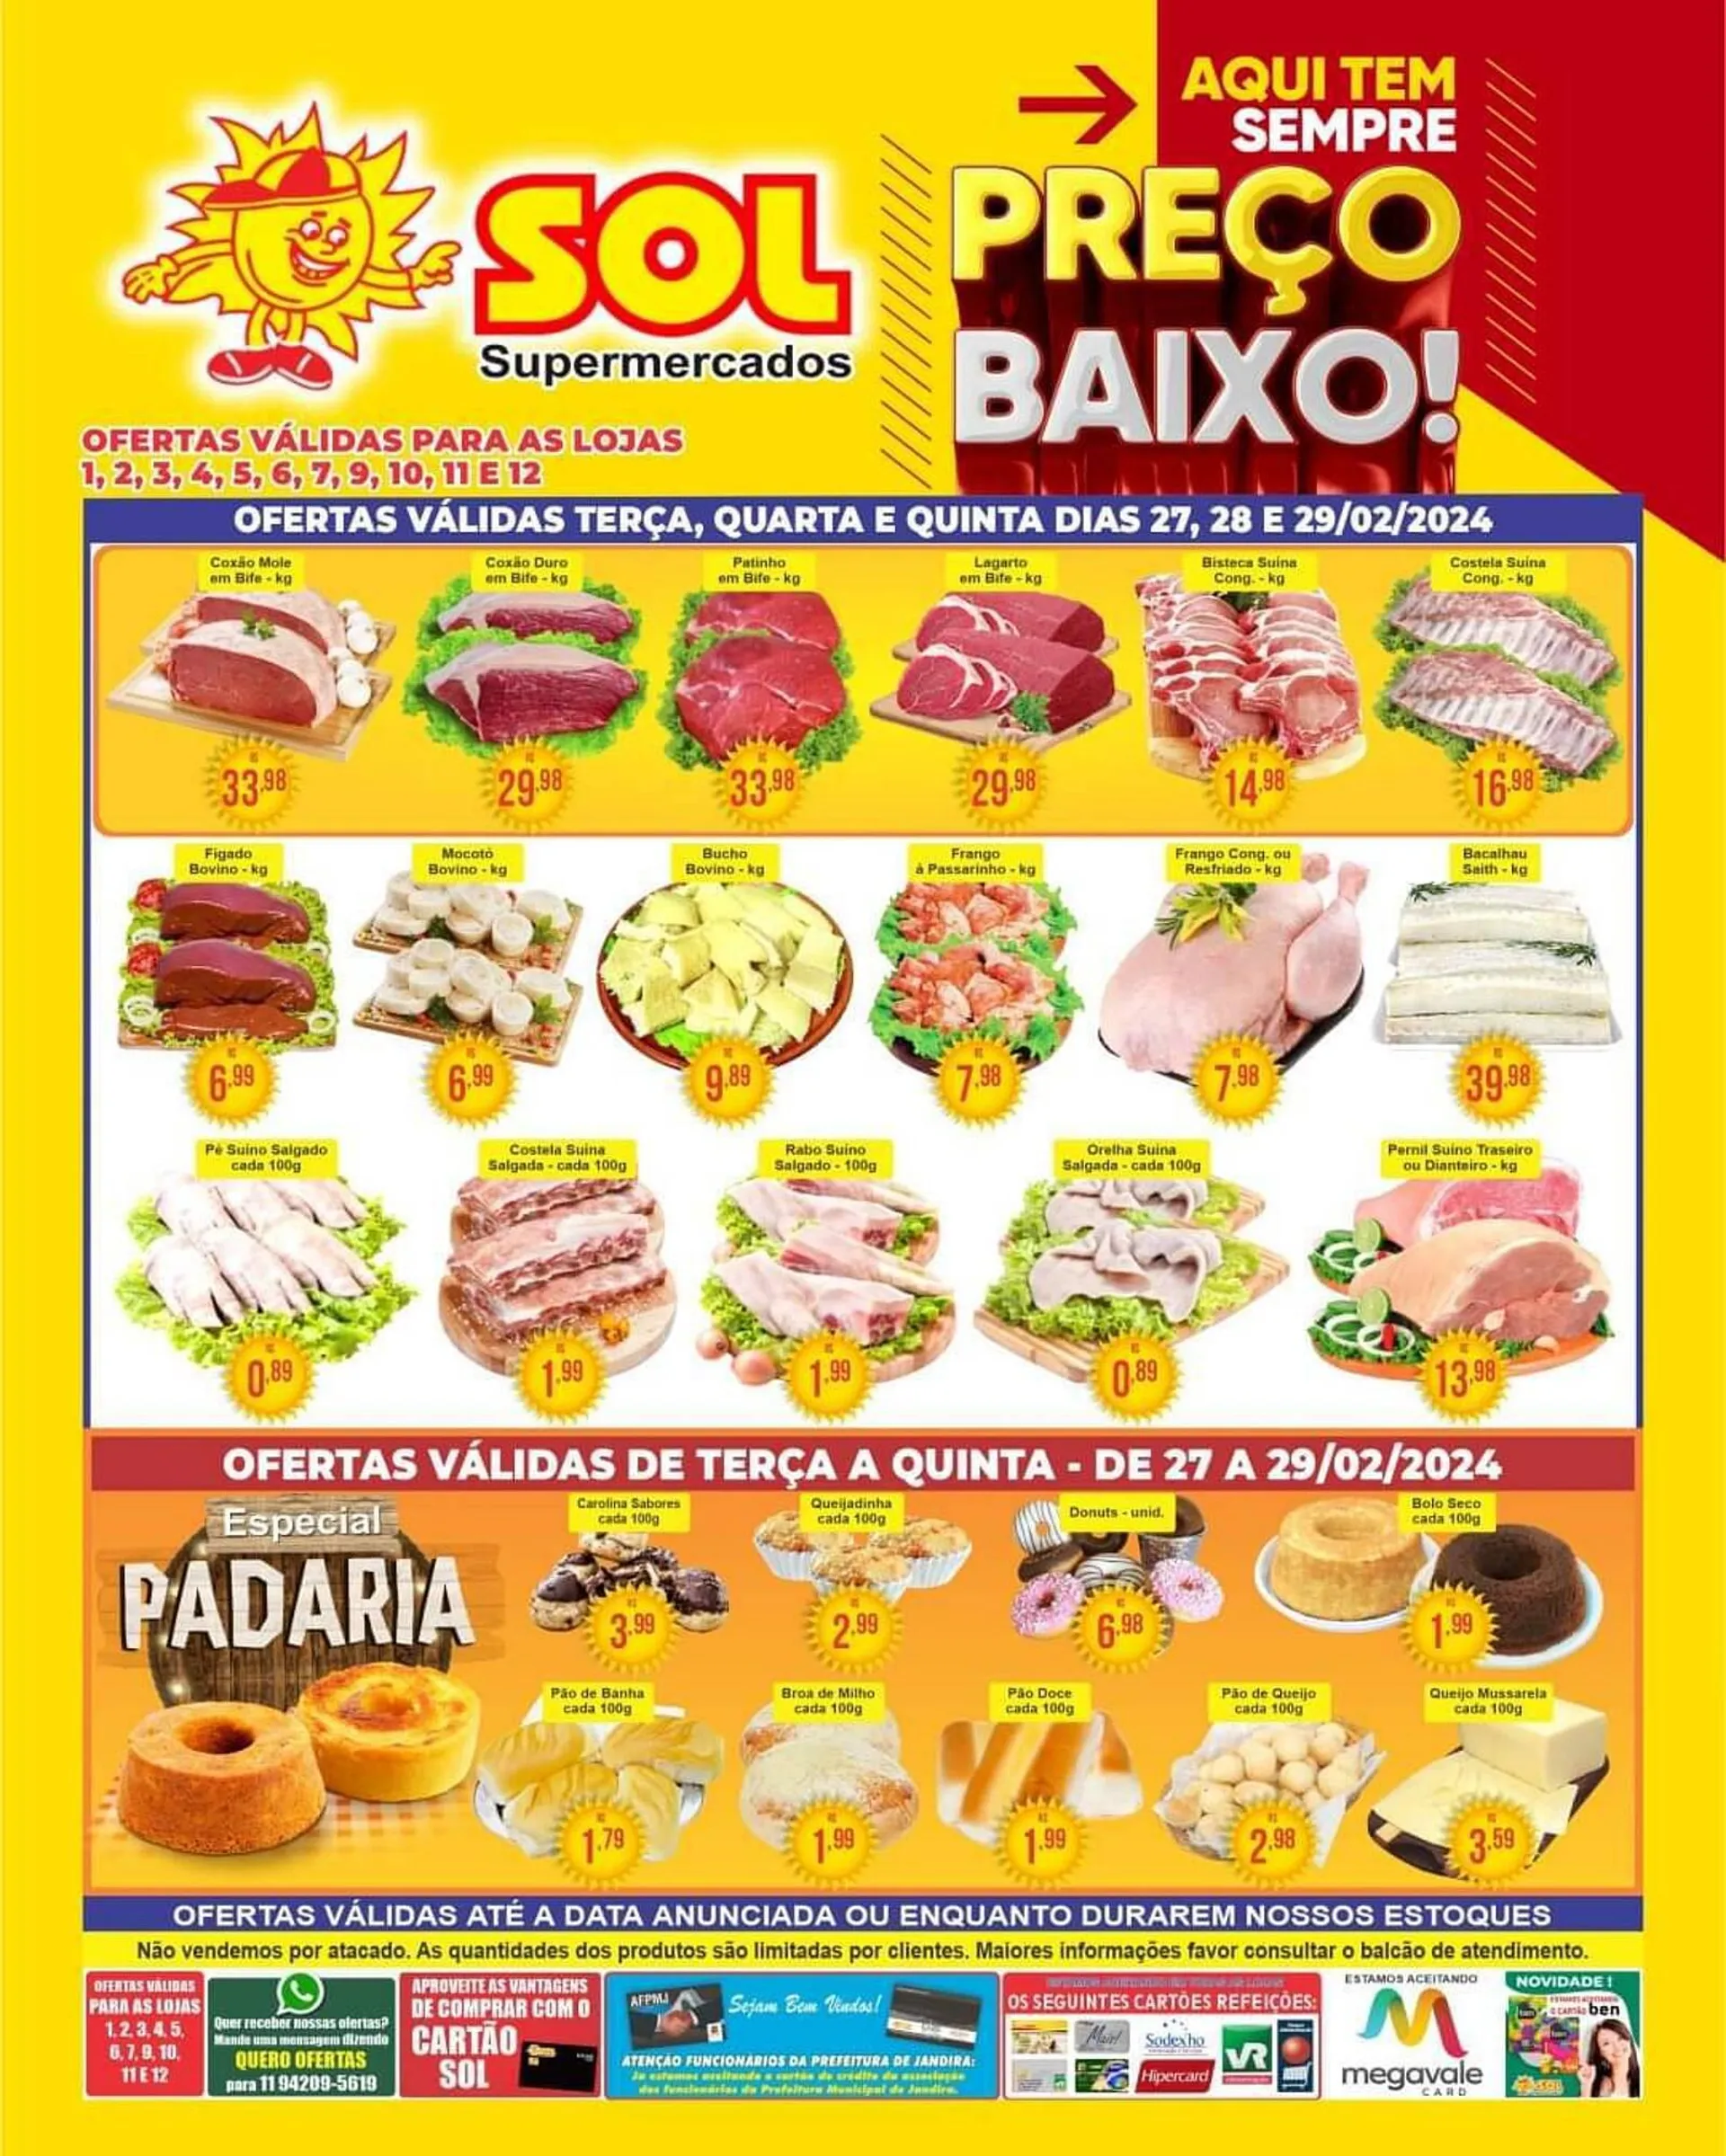 Encarte de Catálogo Sol Supermercados 27 de fevereiro até 29 de fevereiro 2024 - Pagina 